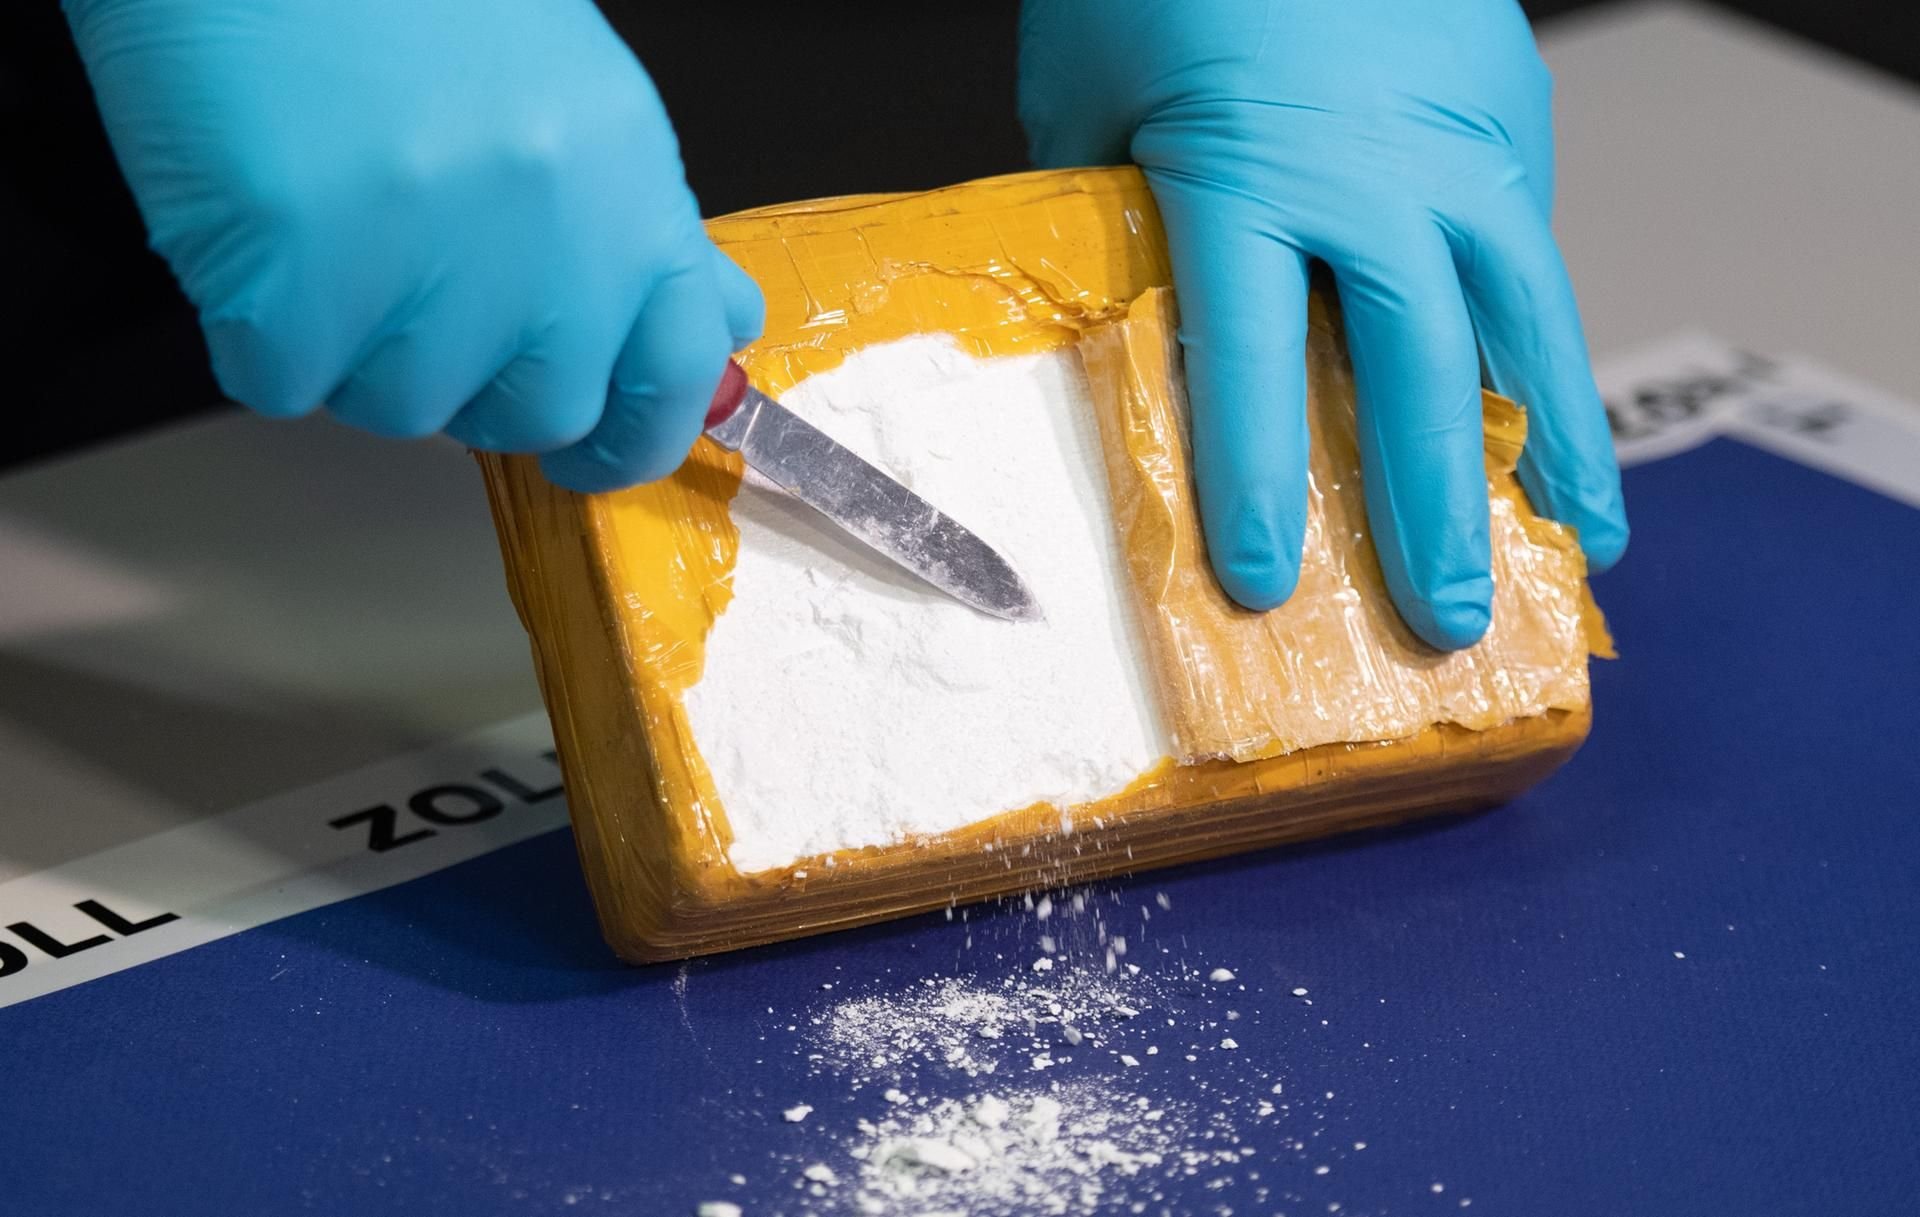 Großhandels- und Straßenpreis von Kokain in Deutschland